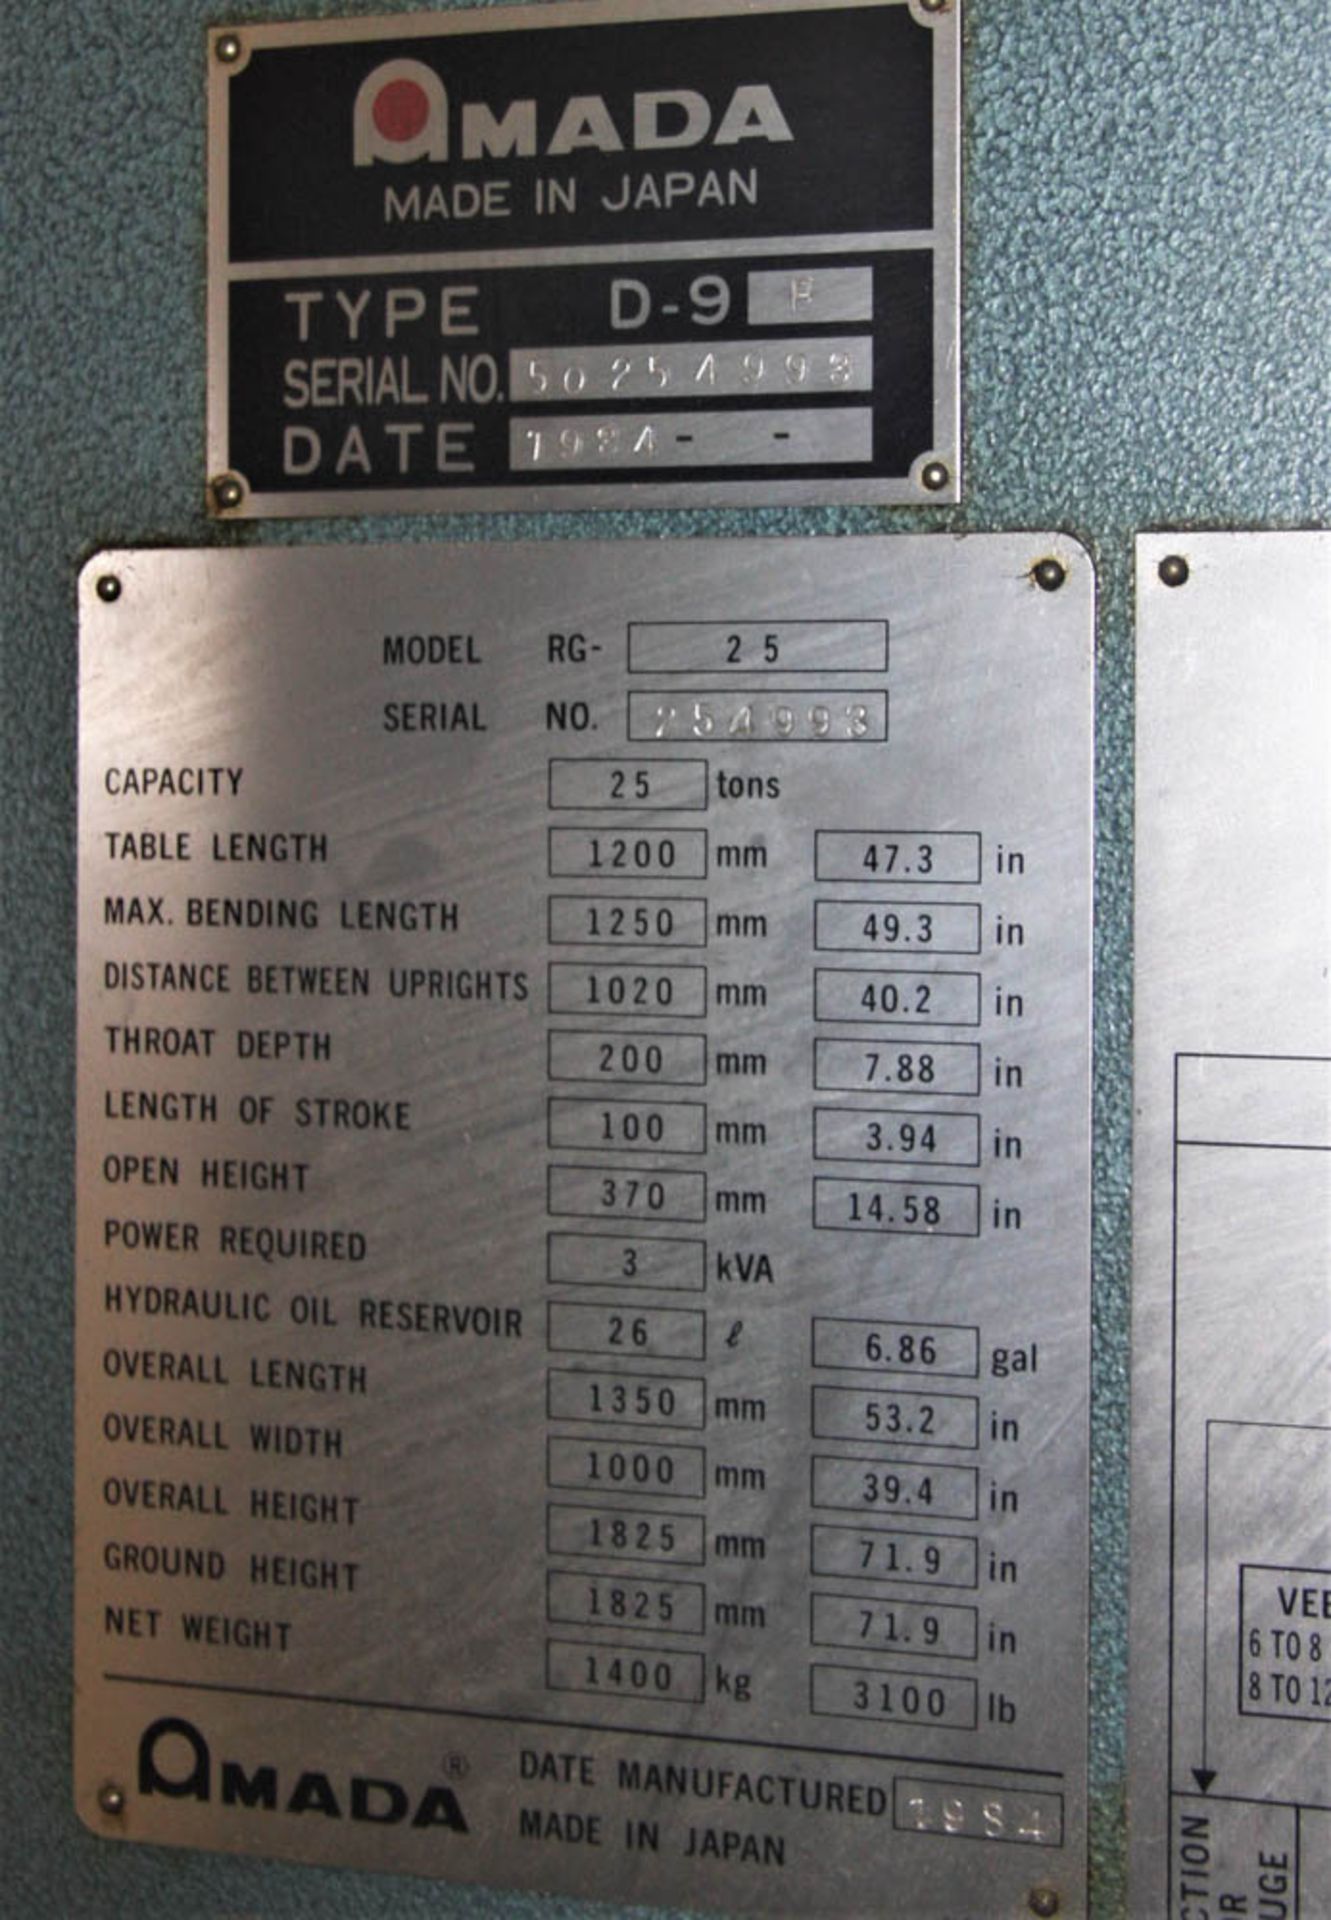 25 TON X 47.3" AMADA RG-25 PRESS BRAKE, W/ 49.3" MAX BENDING LENGTH, 40.2" BETWEEN HOUSING, 7.88" - Image 7 of 9